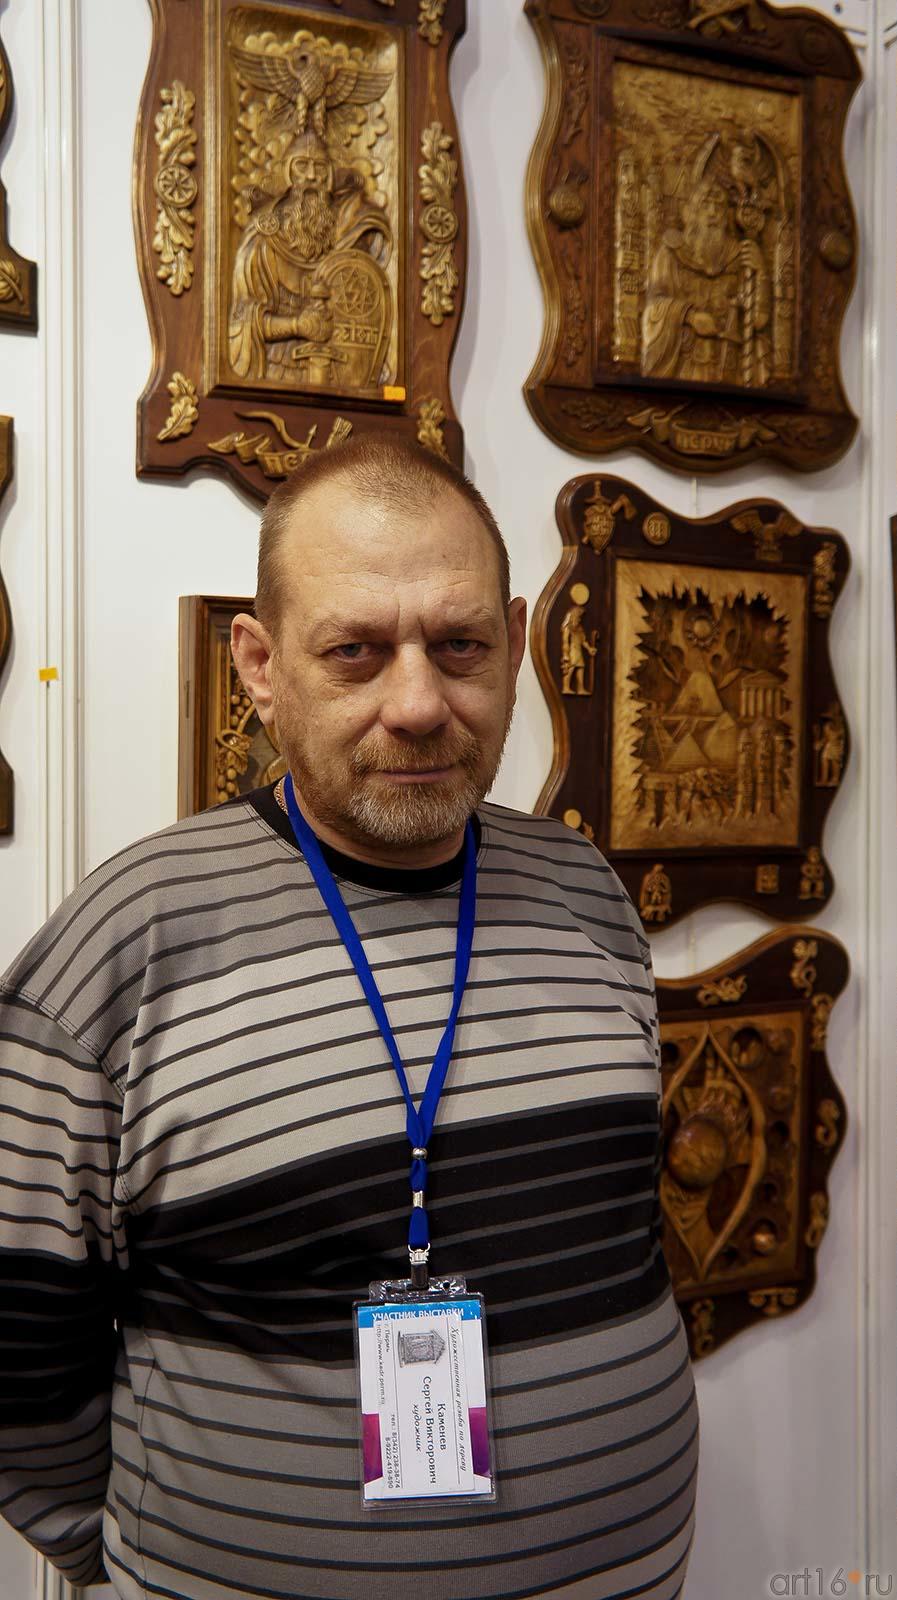 Сергей Каменев, художник. Студия ʺАвторʺ, Пермь::«Арт Пермь» — 2012